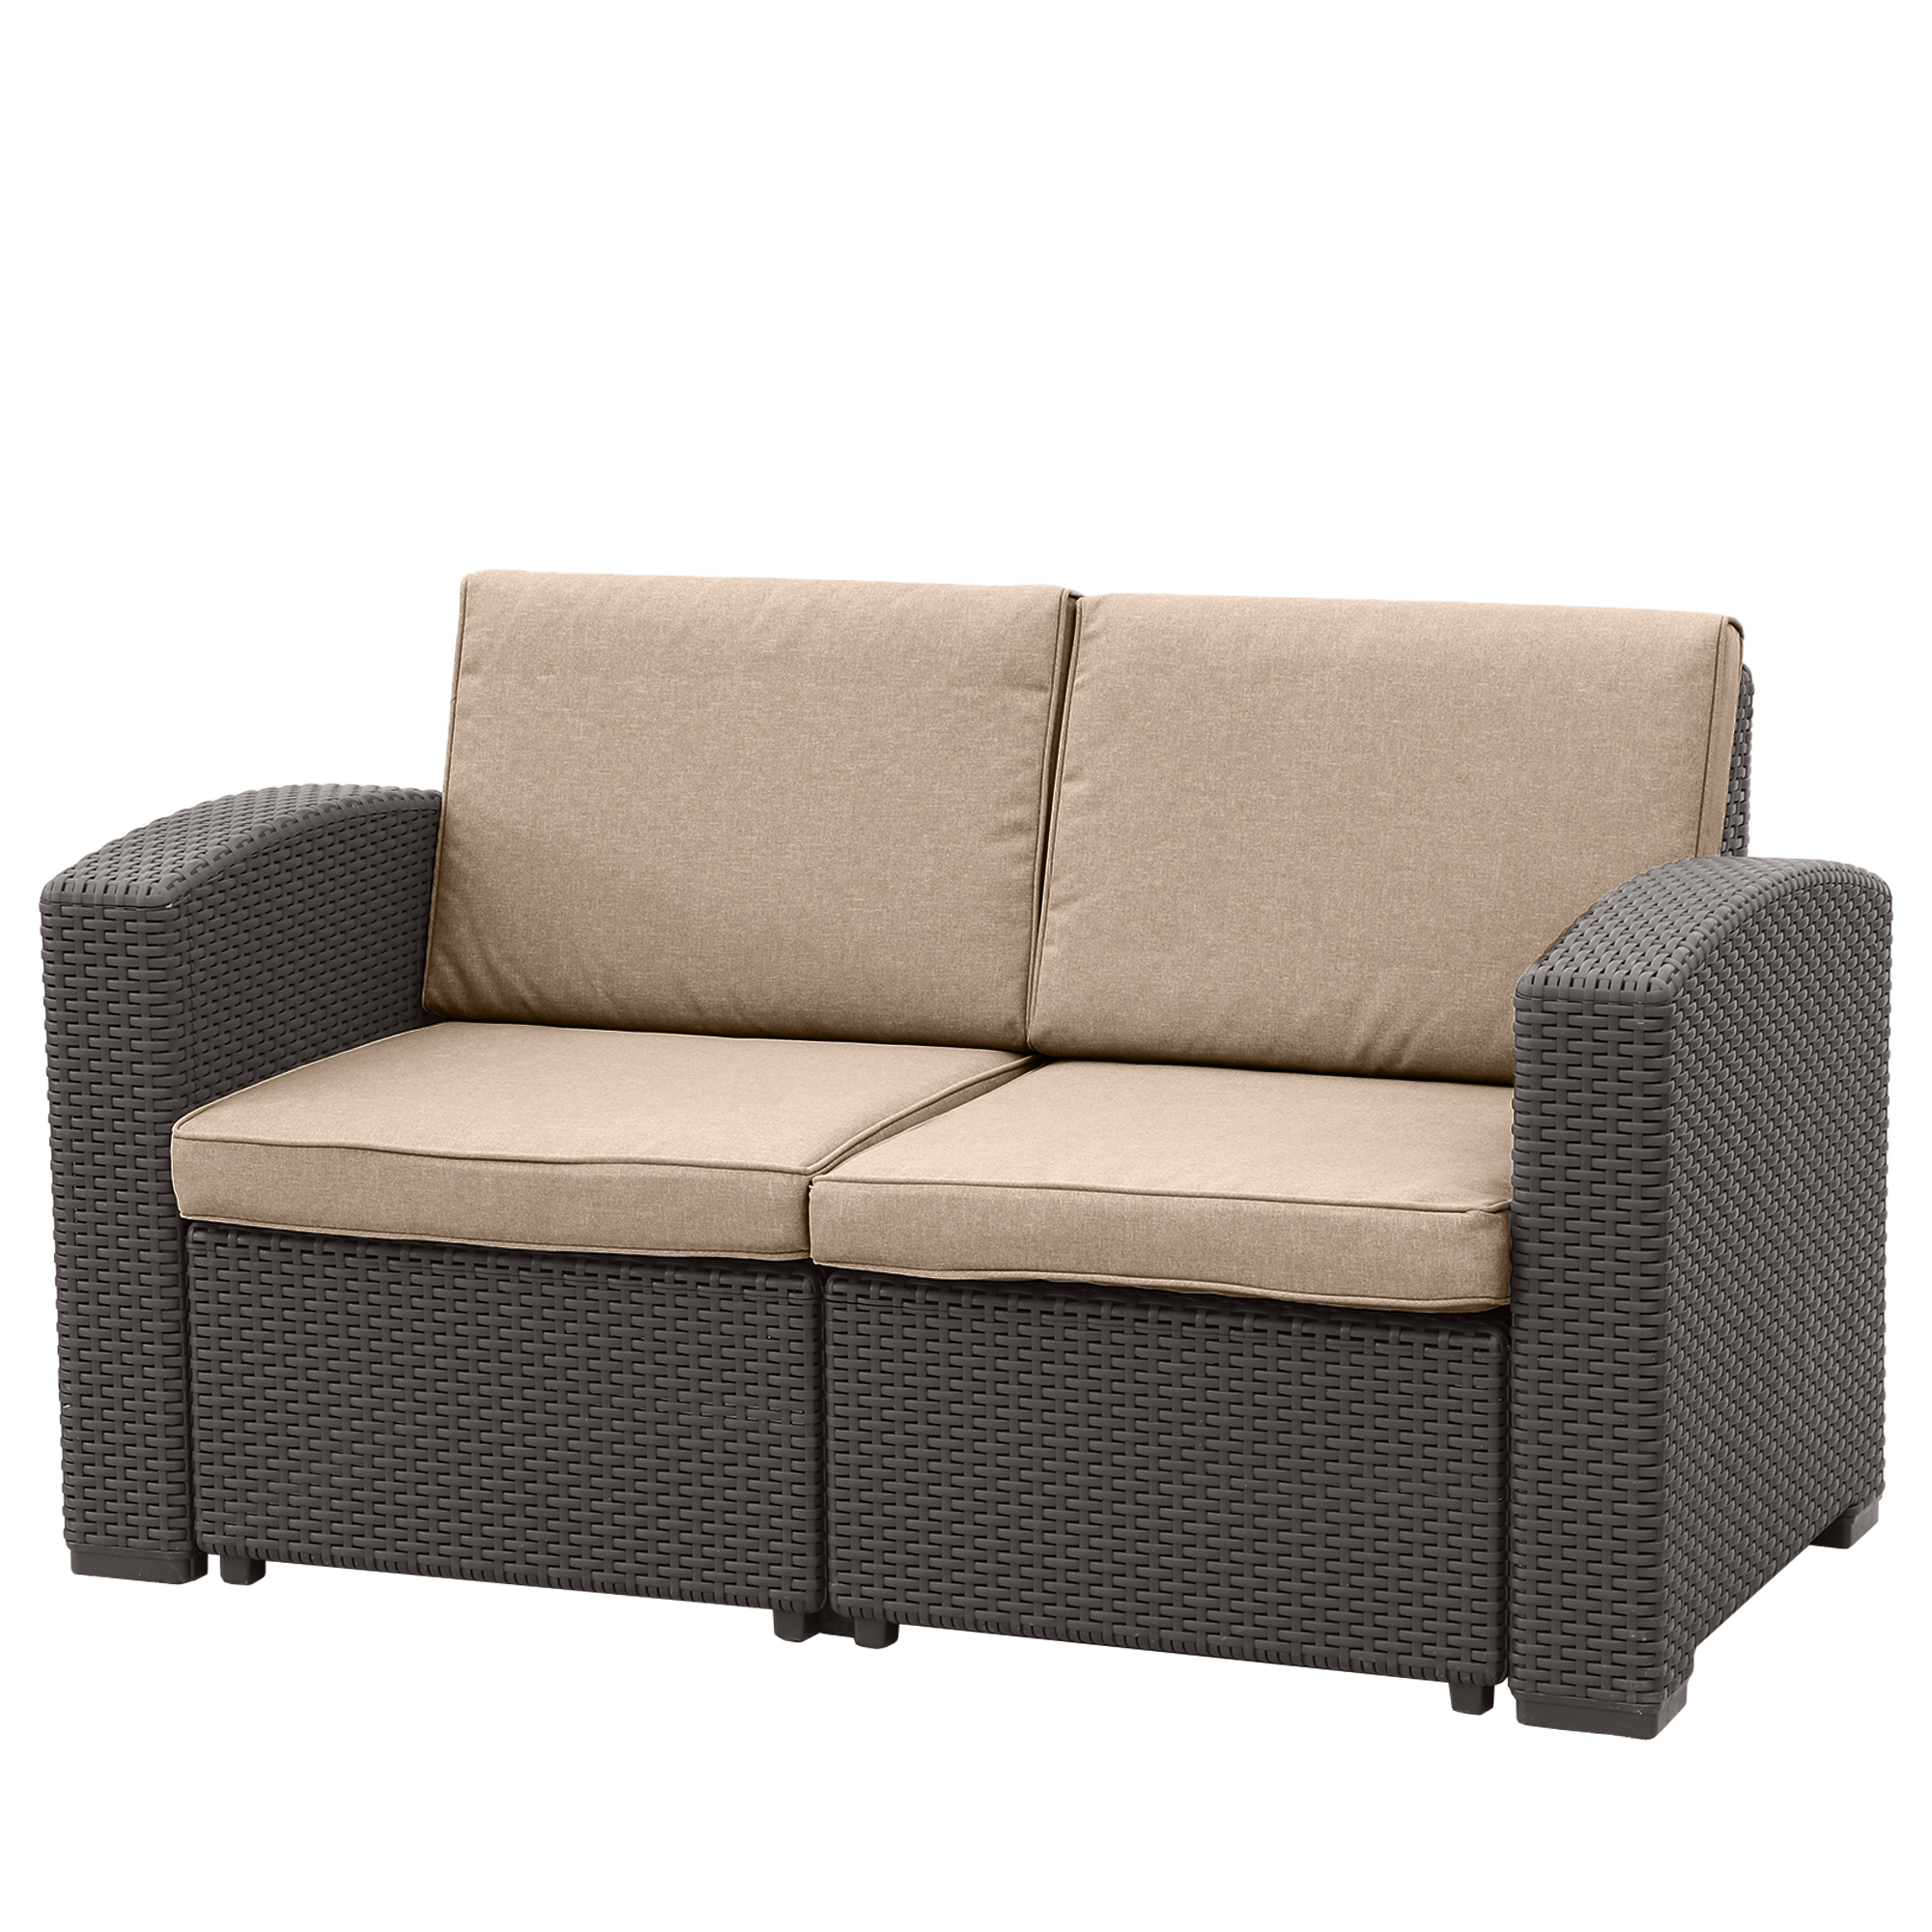 Комплект мебели LF 5 предметов, цвет коричневый, размер 199x75x71см 141x75x71 см - фото 3